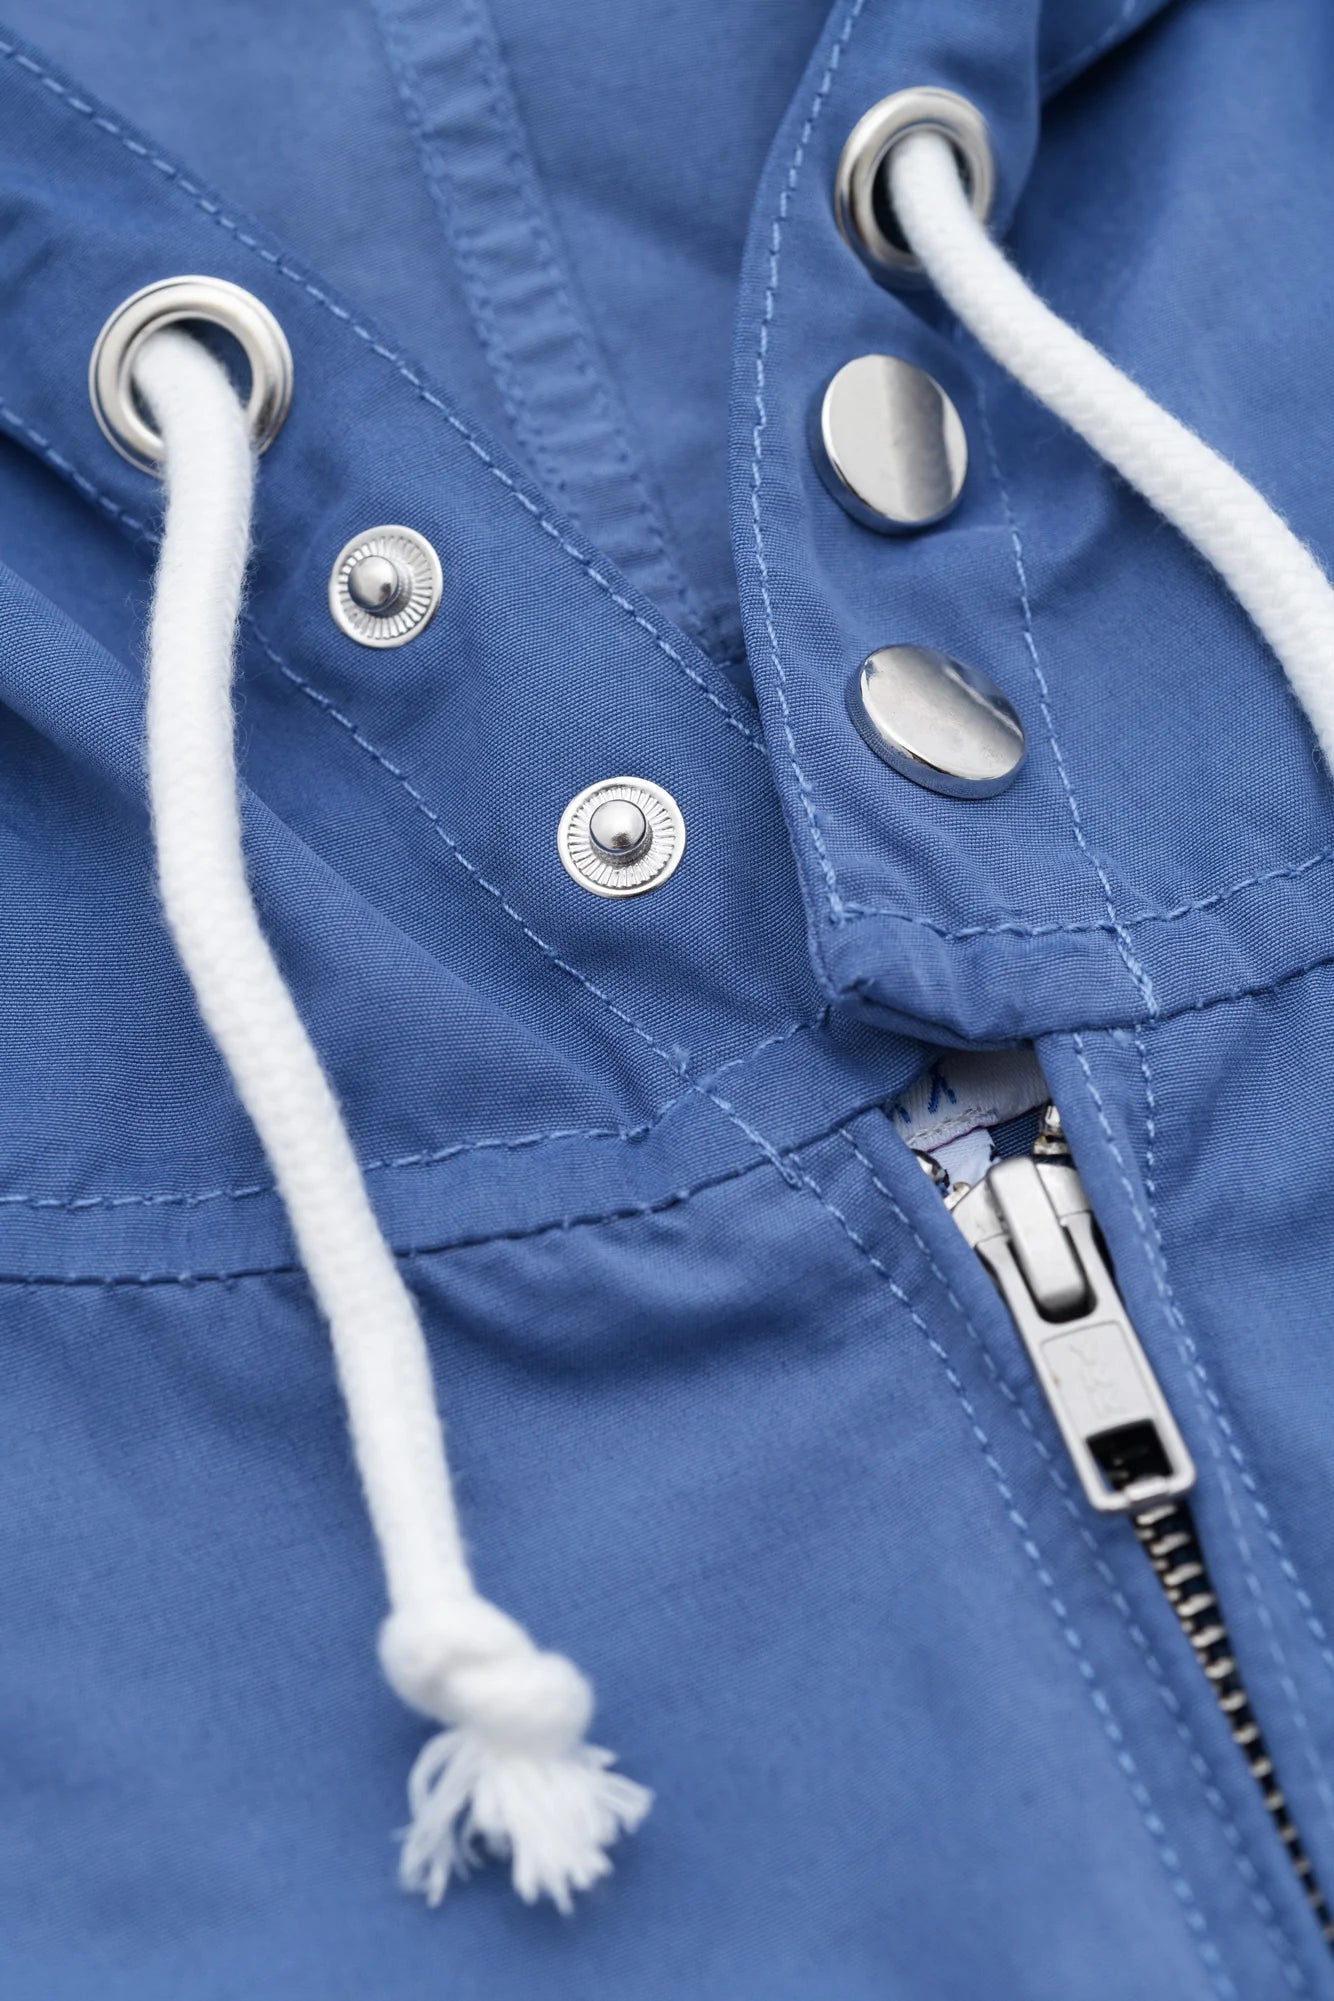 Yardsale Sunscript Hooded Jacket (Blue)